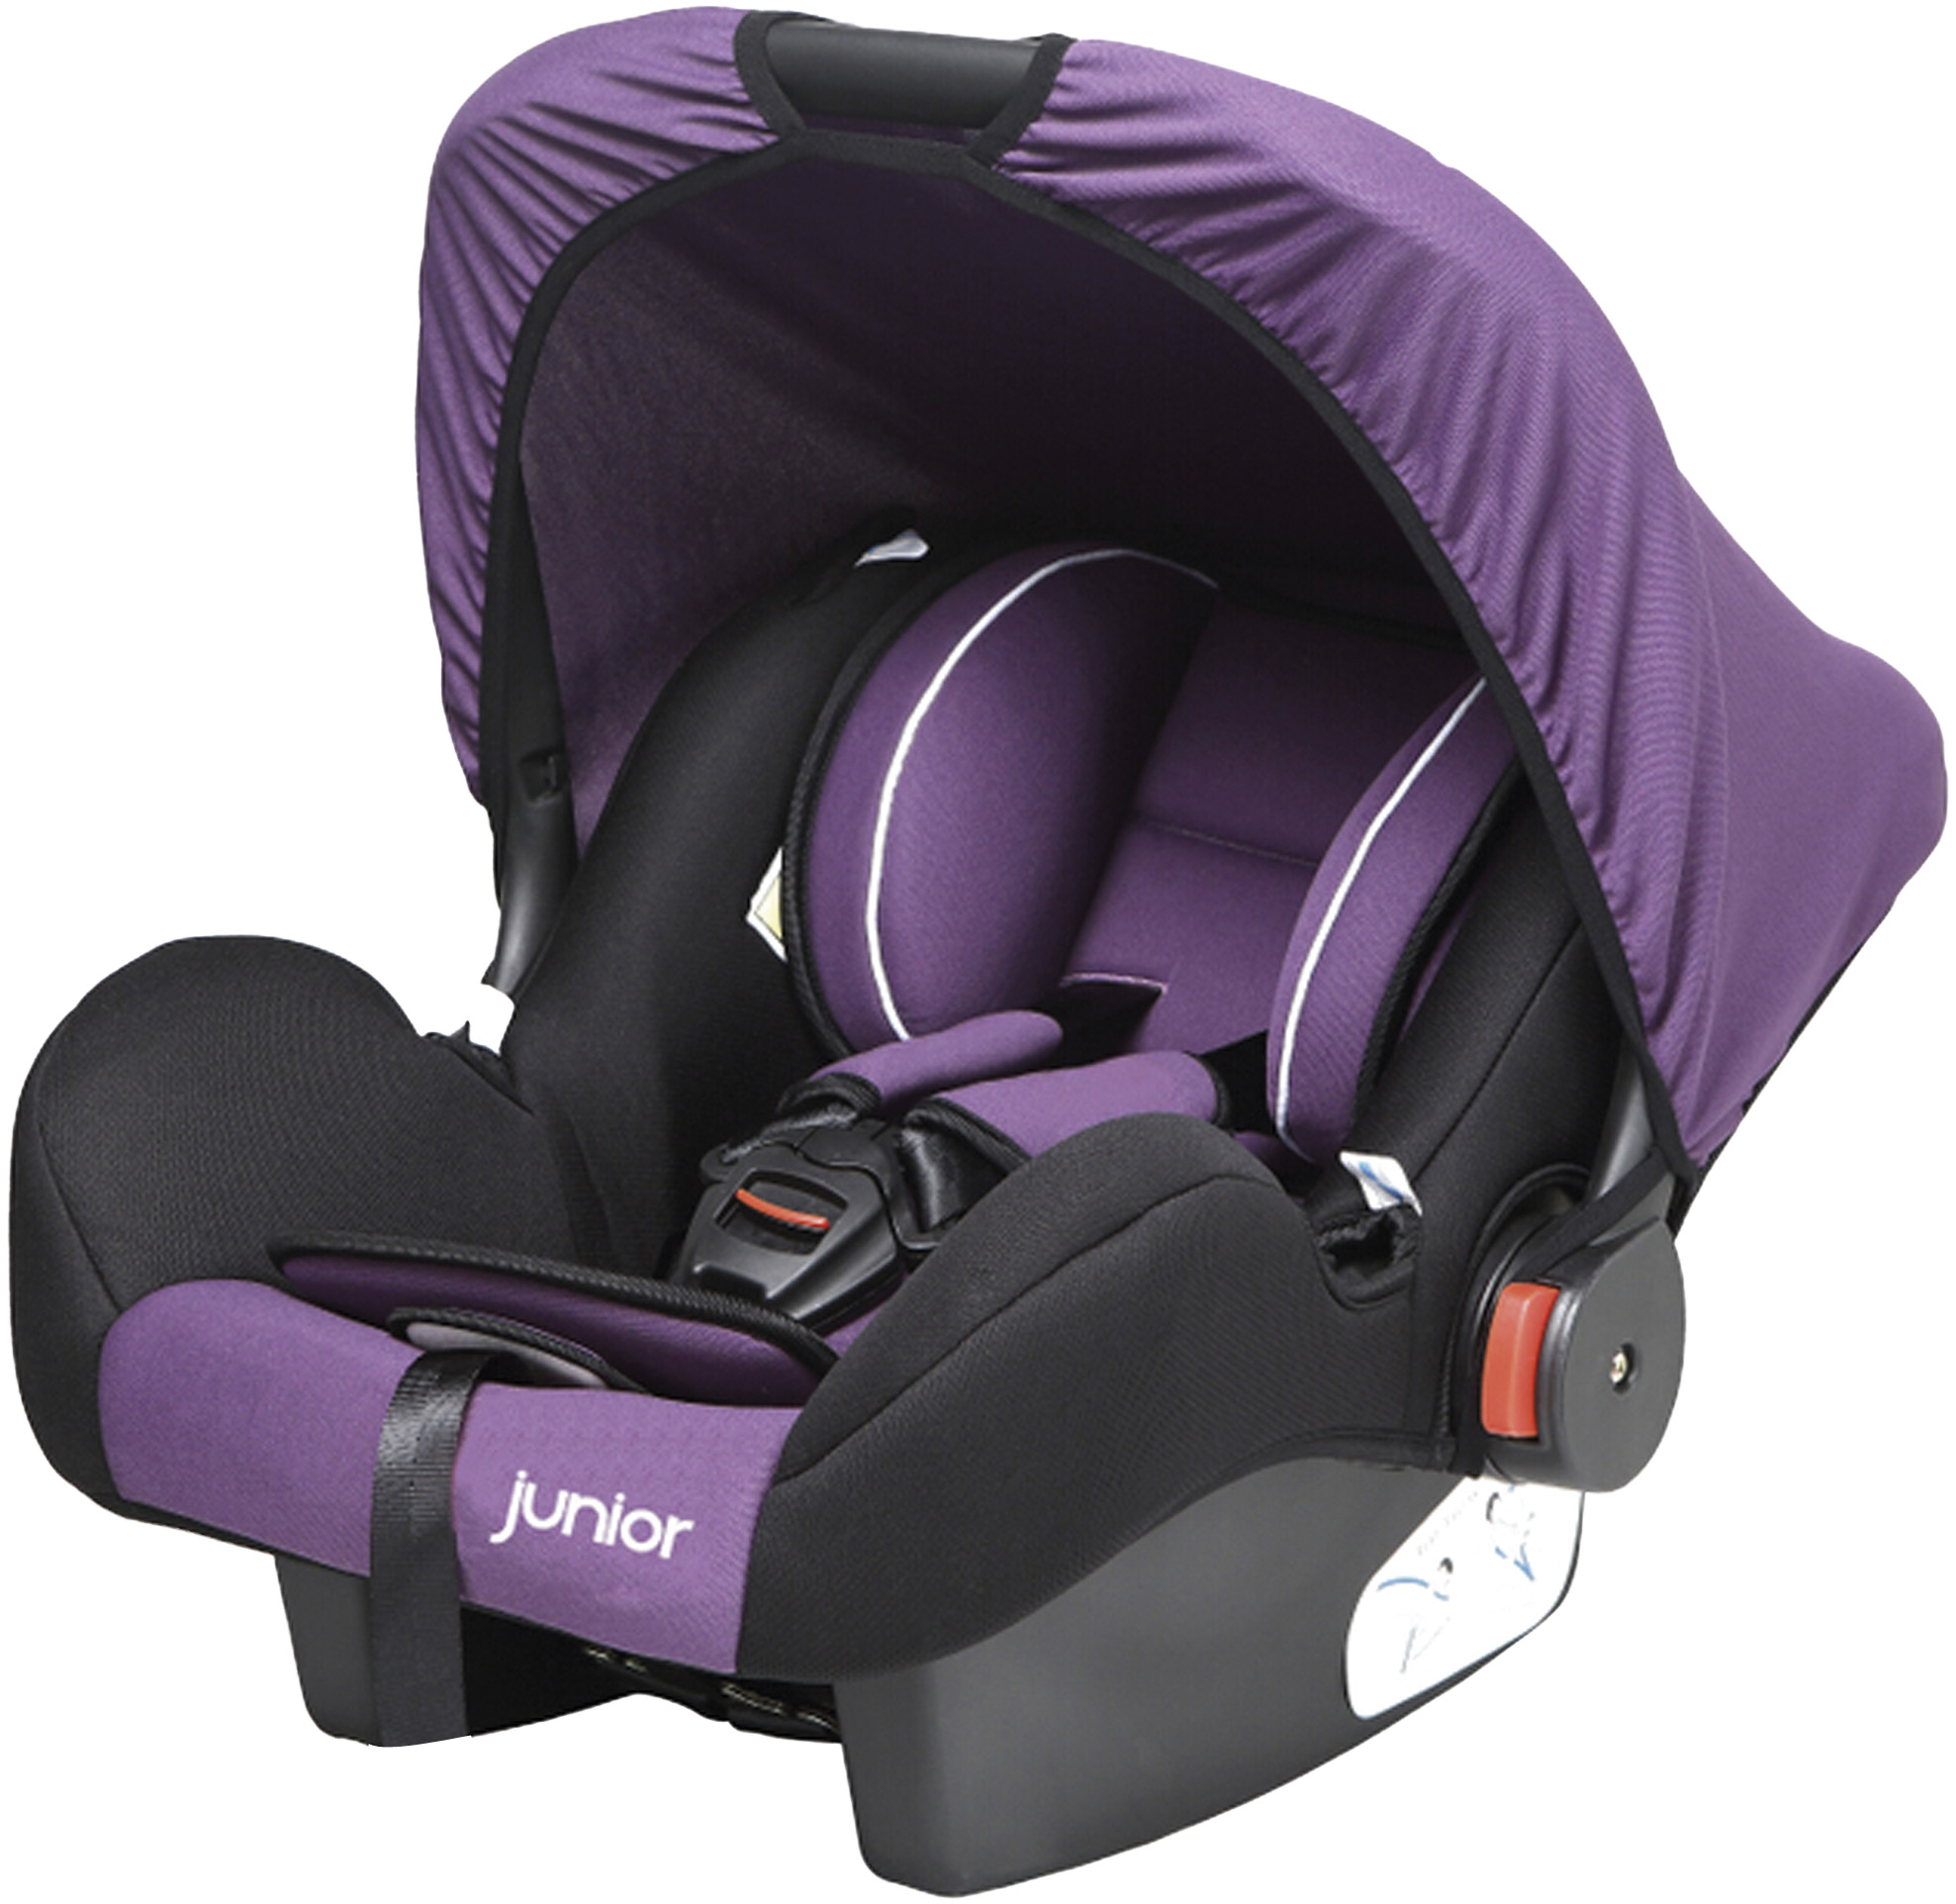 Bambini violett | Kinderschalensitz Bambini | PETEX junior | PETEX  Onlineshop | Autozubehör direkt vom Hersteller